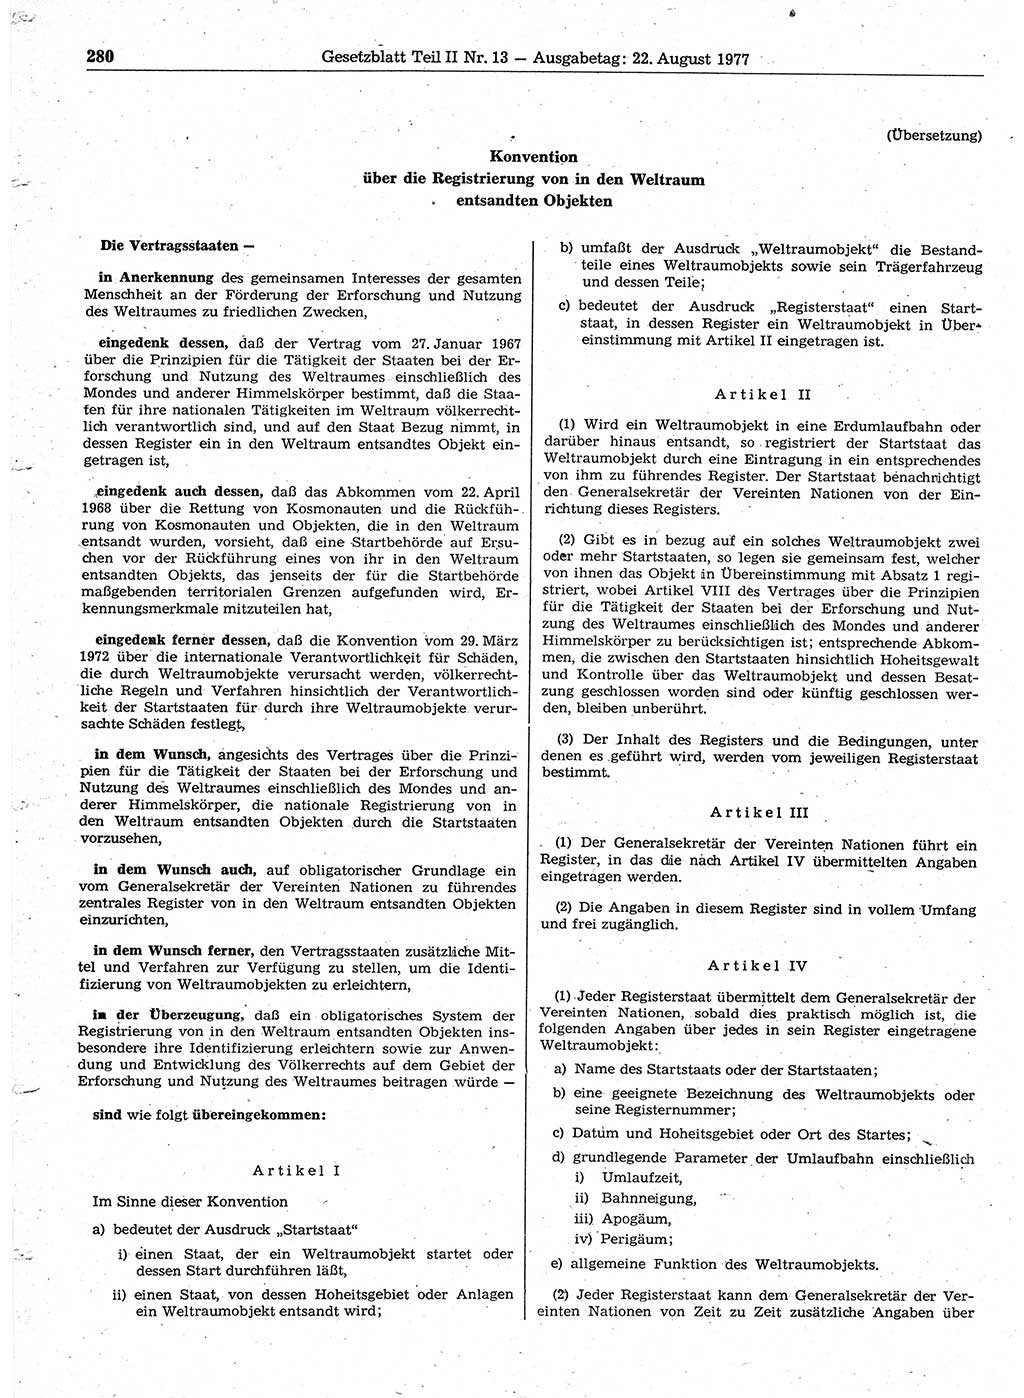 Gesetzblatt (GBl.) der Deutschen Demokratischen Republik (DDR) Teil ⅠⅠ 1977, Seite 280 (GBl. DDR ⅠⅠ 1977, S. 280)